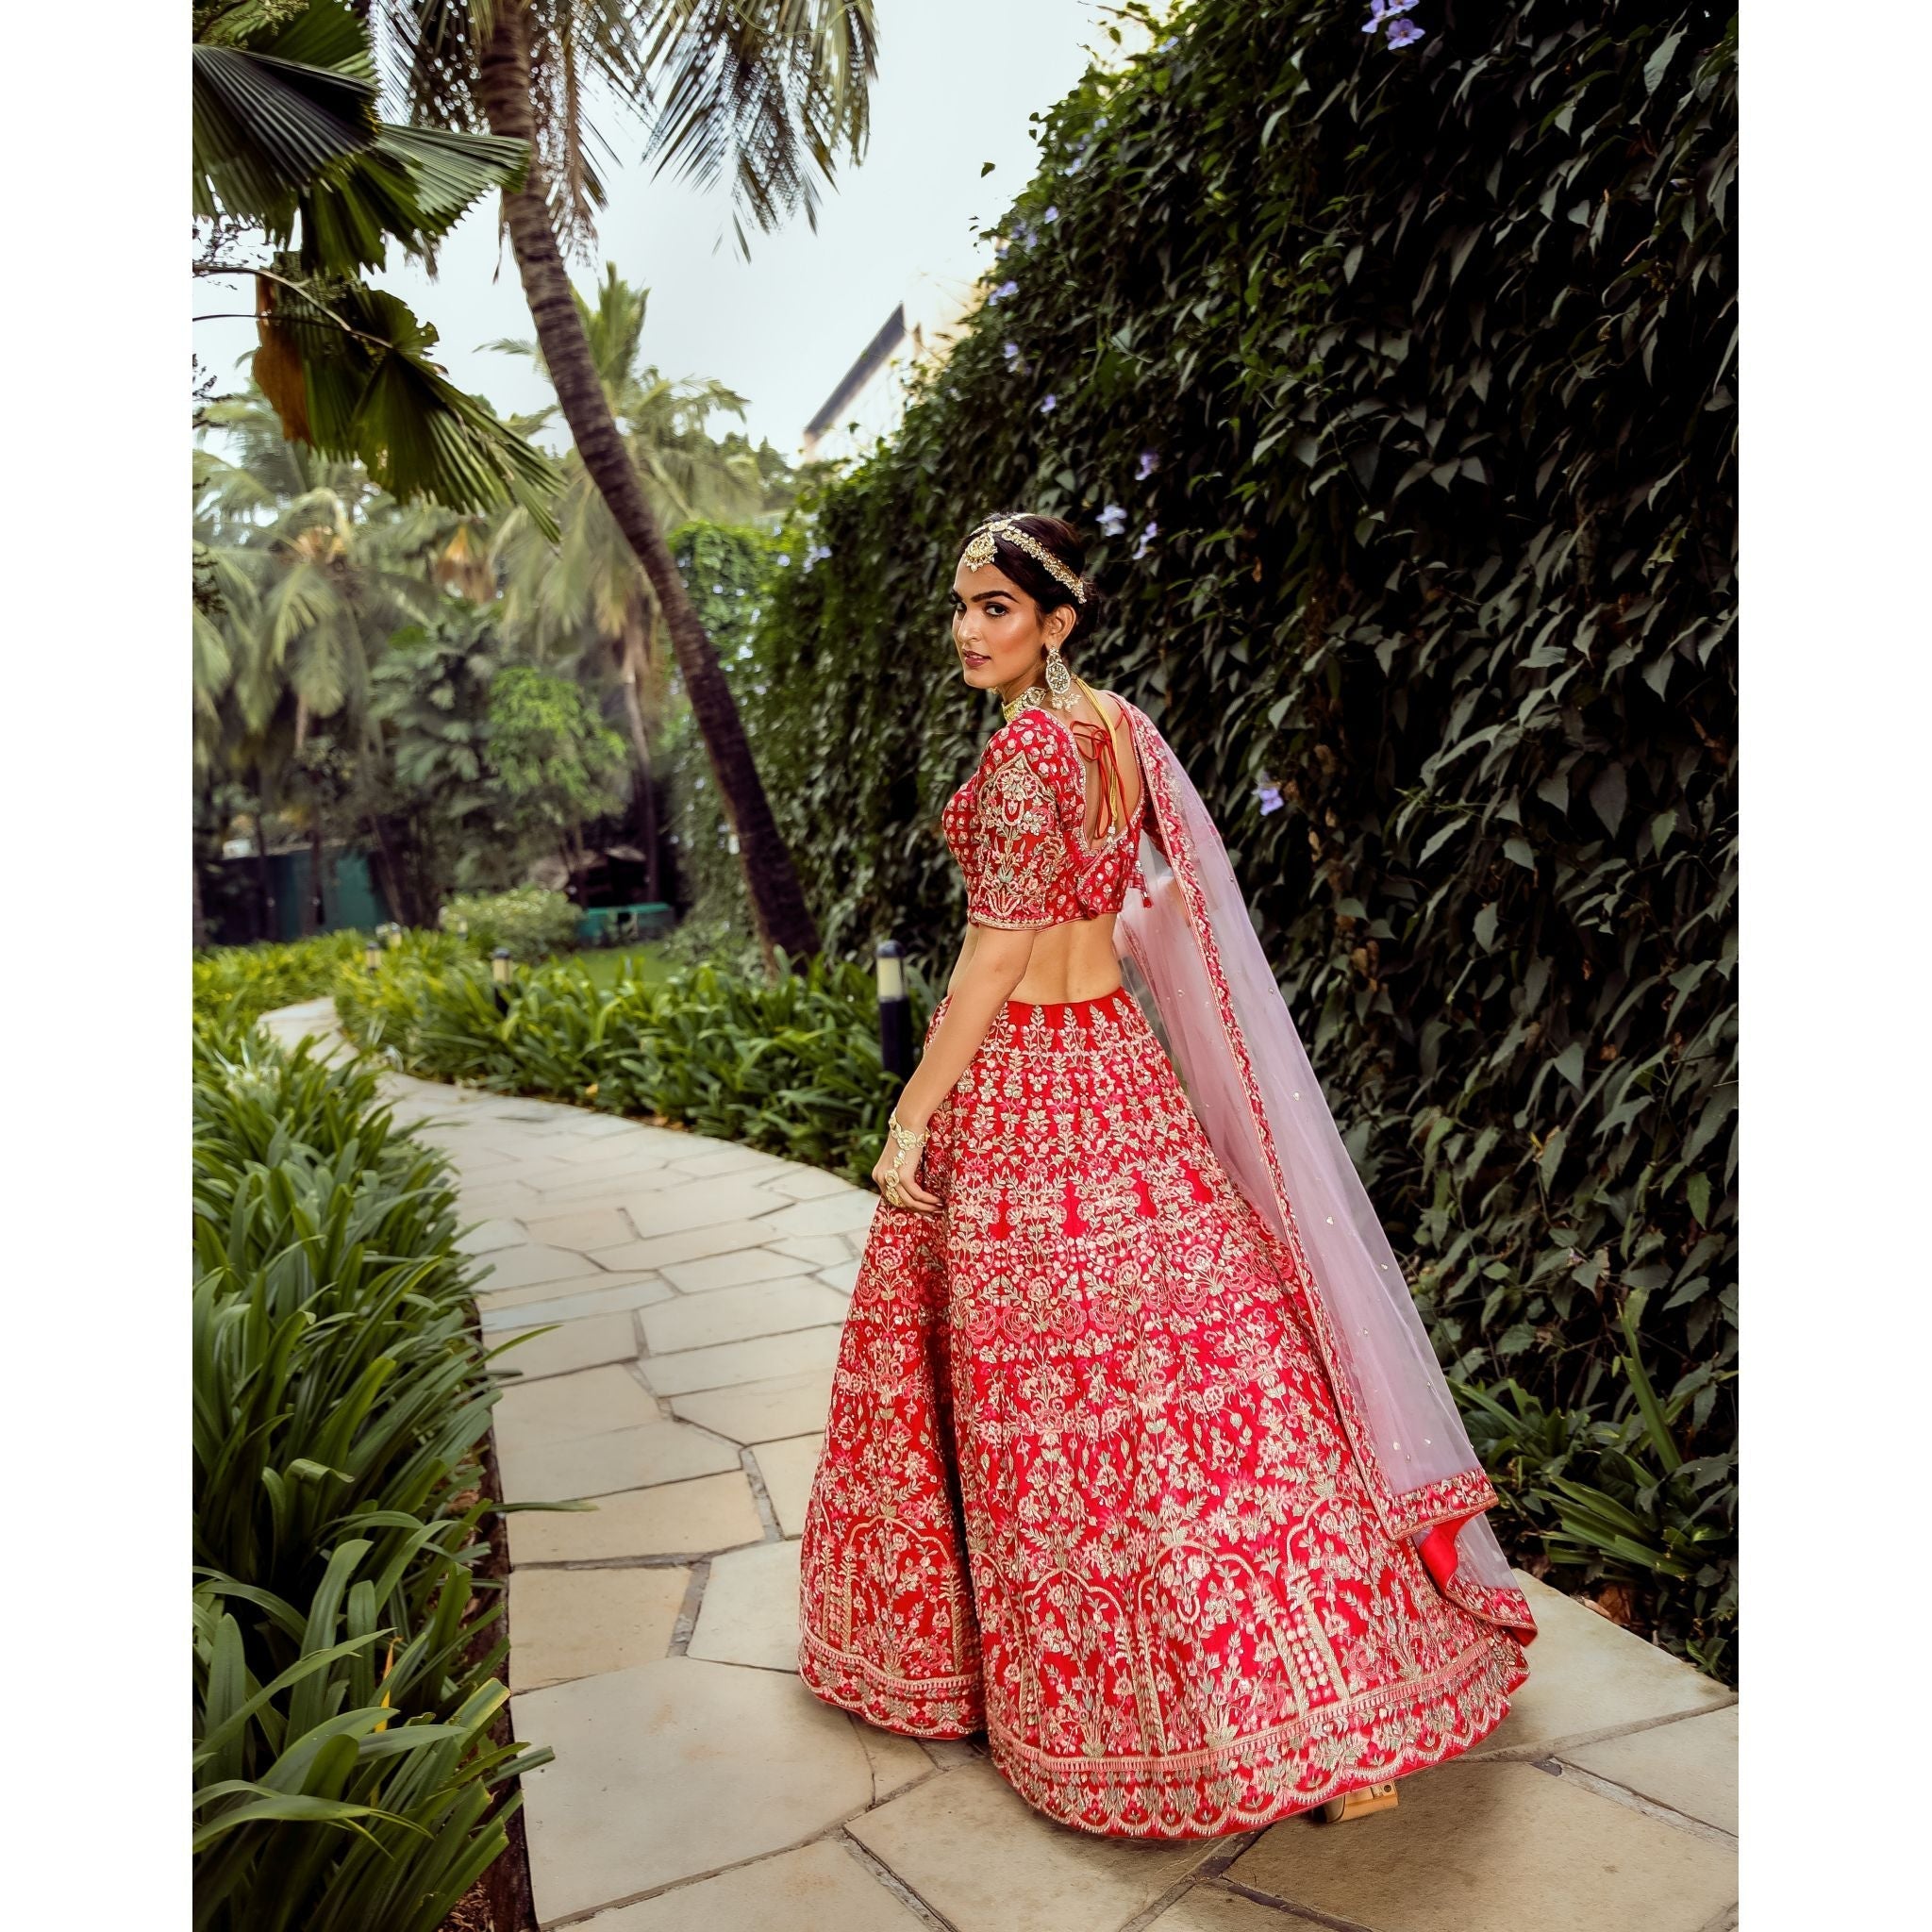 Scarlet Mughal Lehenga Set - Indian Designer Bridal Wedding Outfit